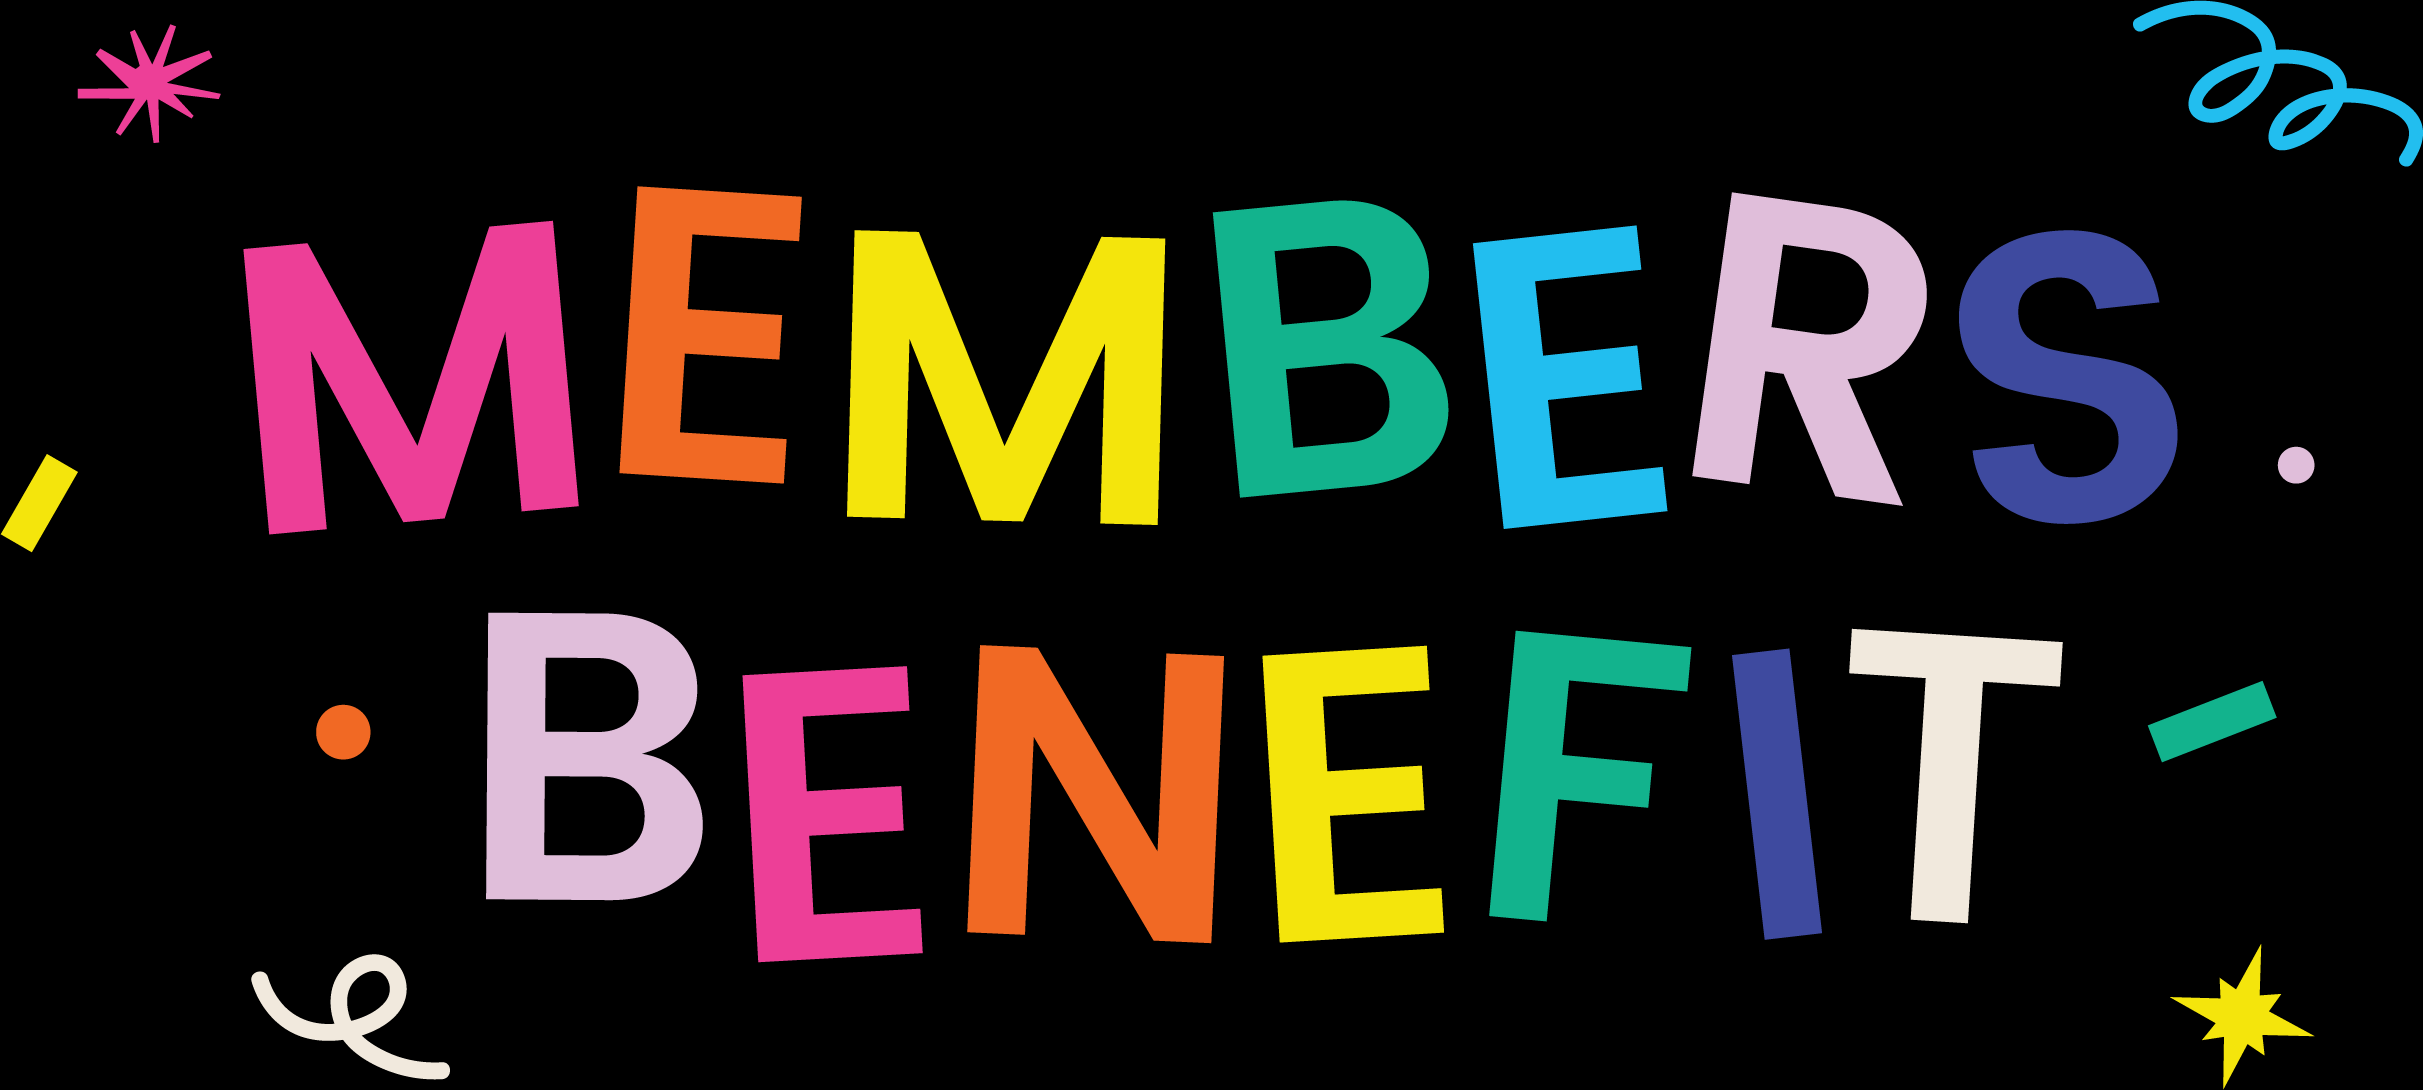 Members Benefit